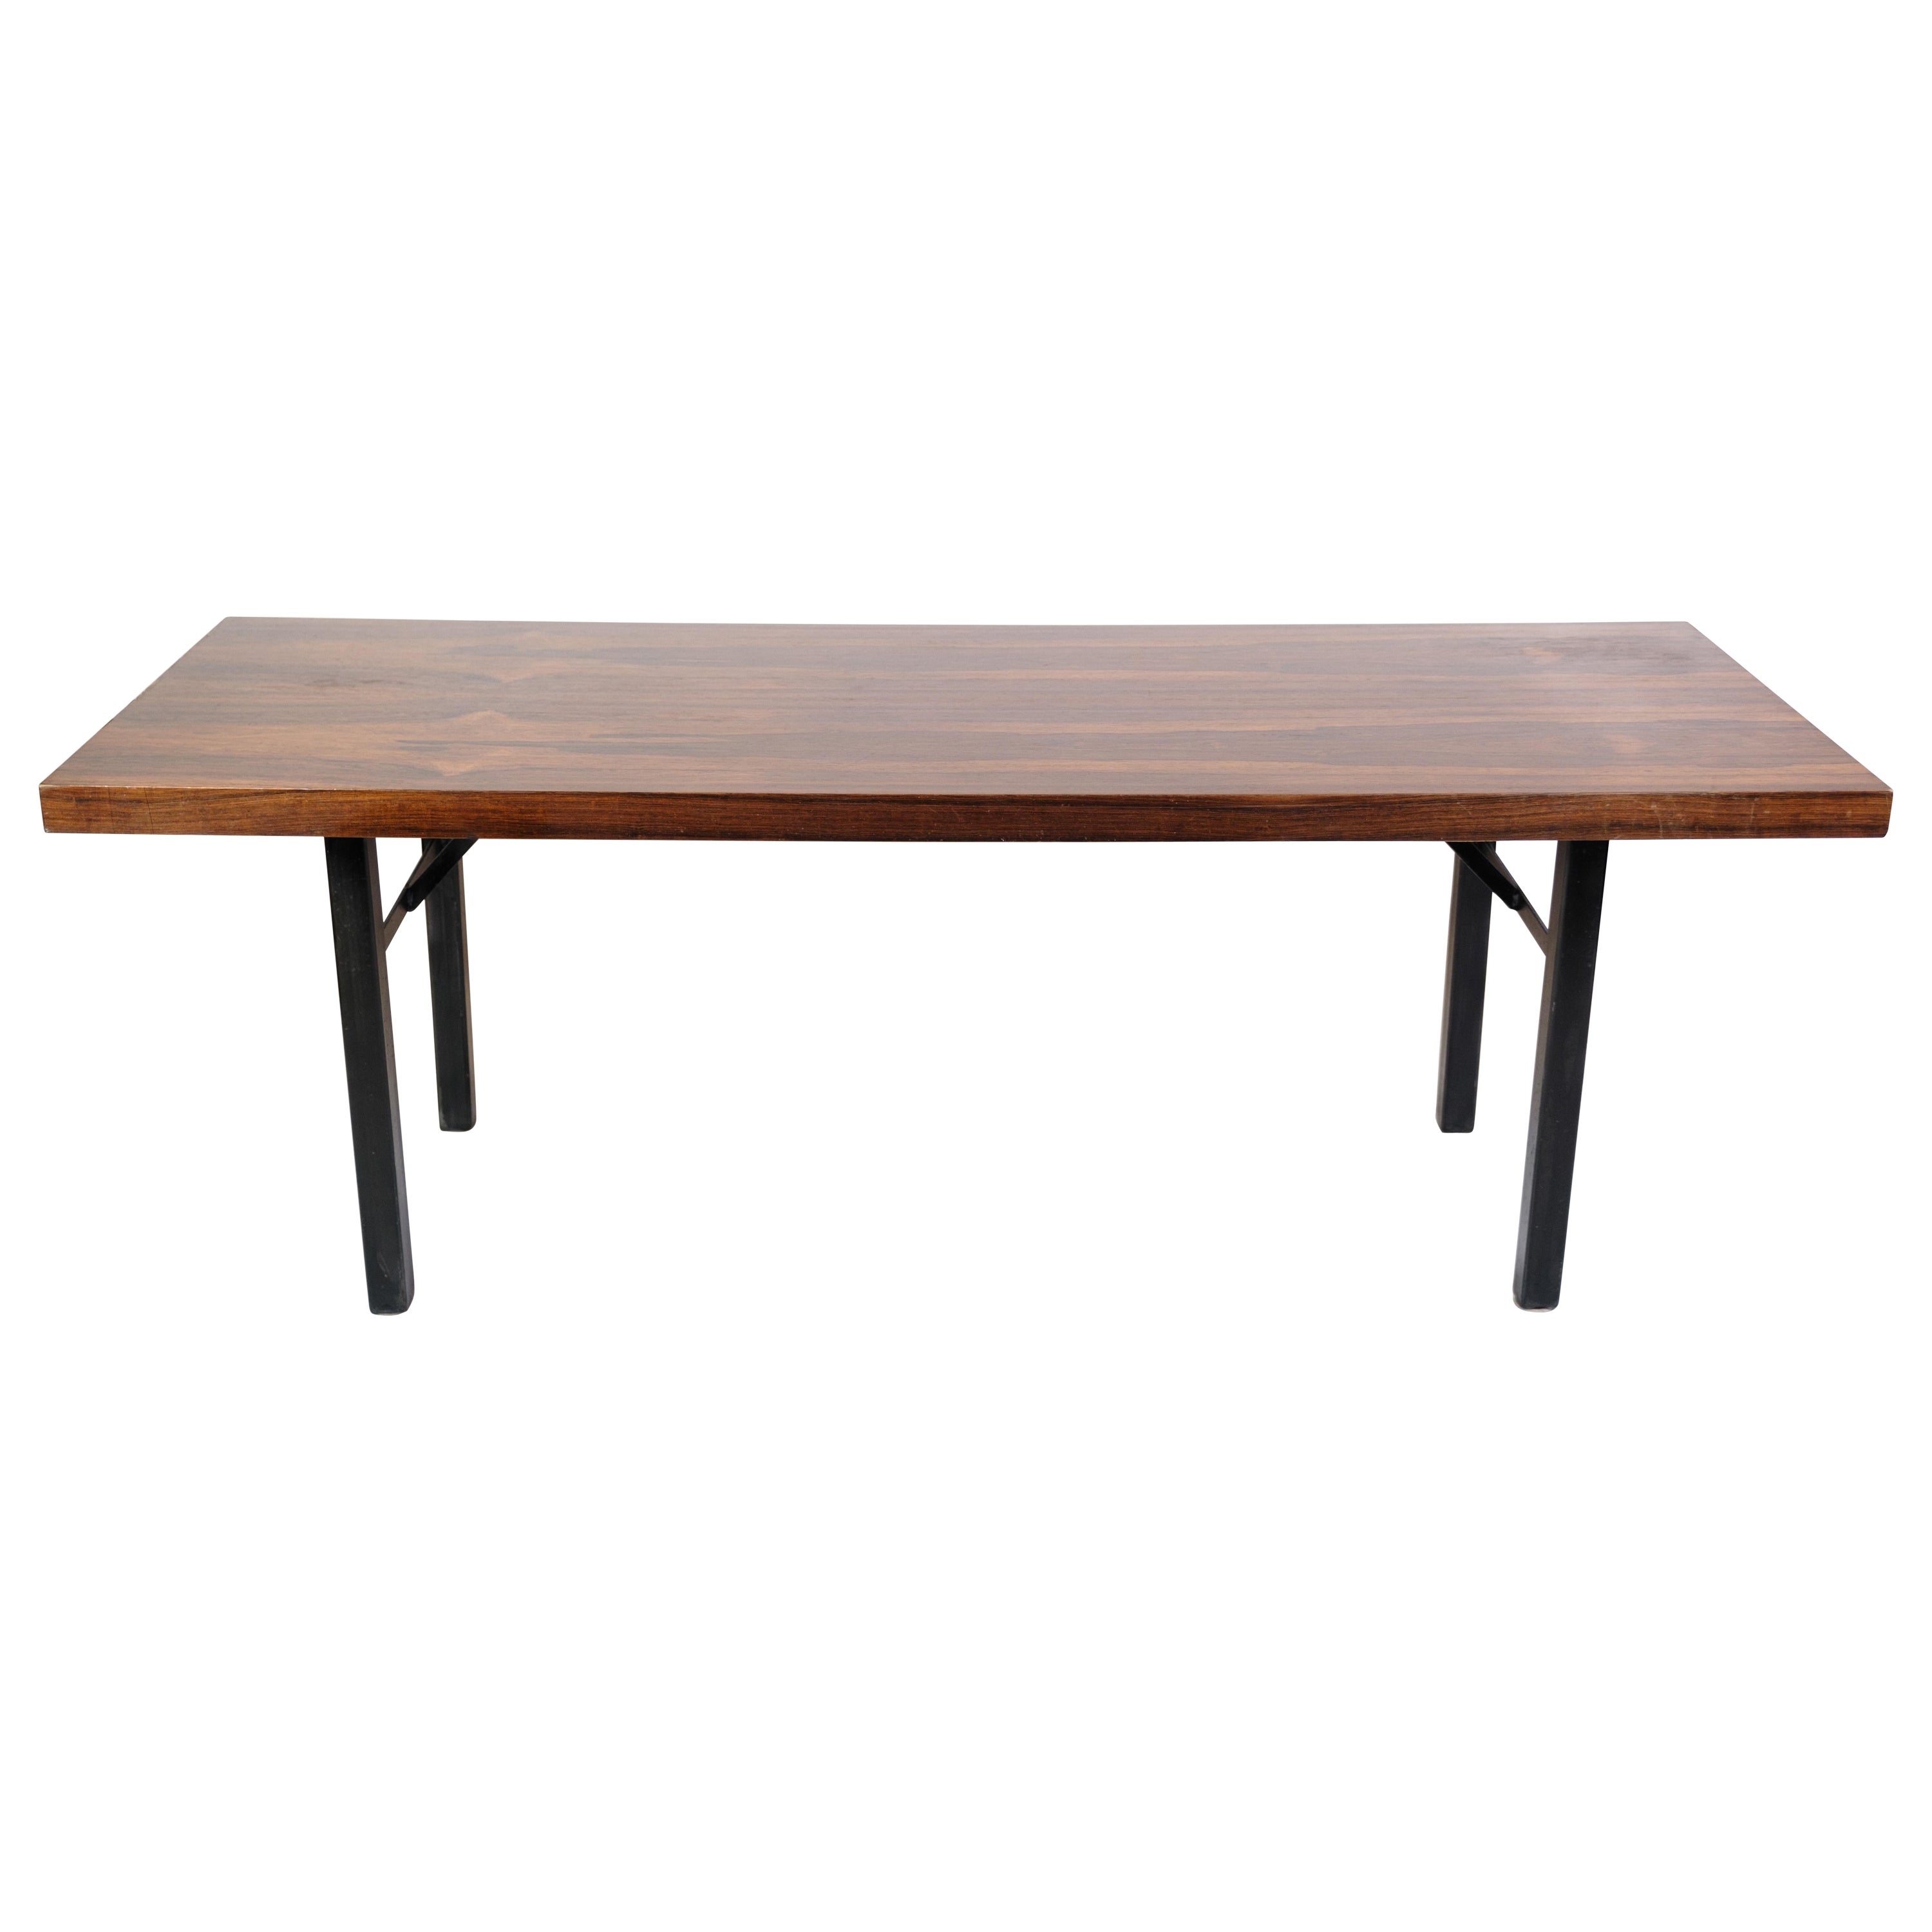 Table basse en bois de rose, design danois des années 1960